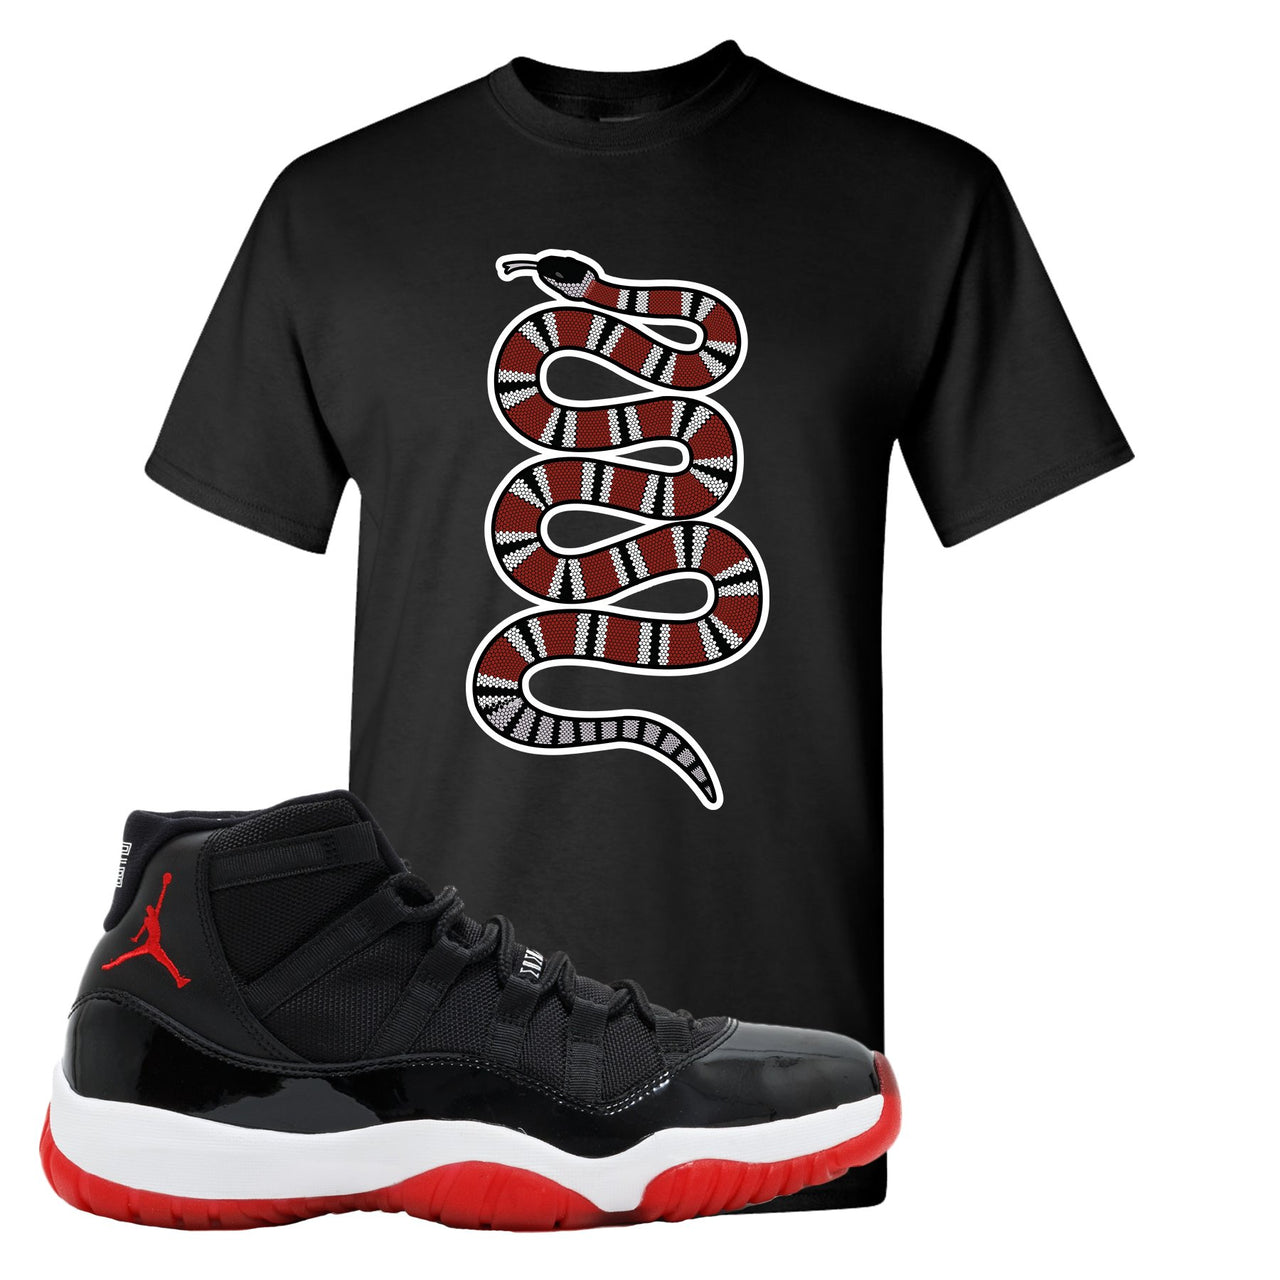 Jordan 11 Bred Coiled Snake Black Sneaker Hook Up T-Shirt